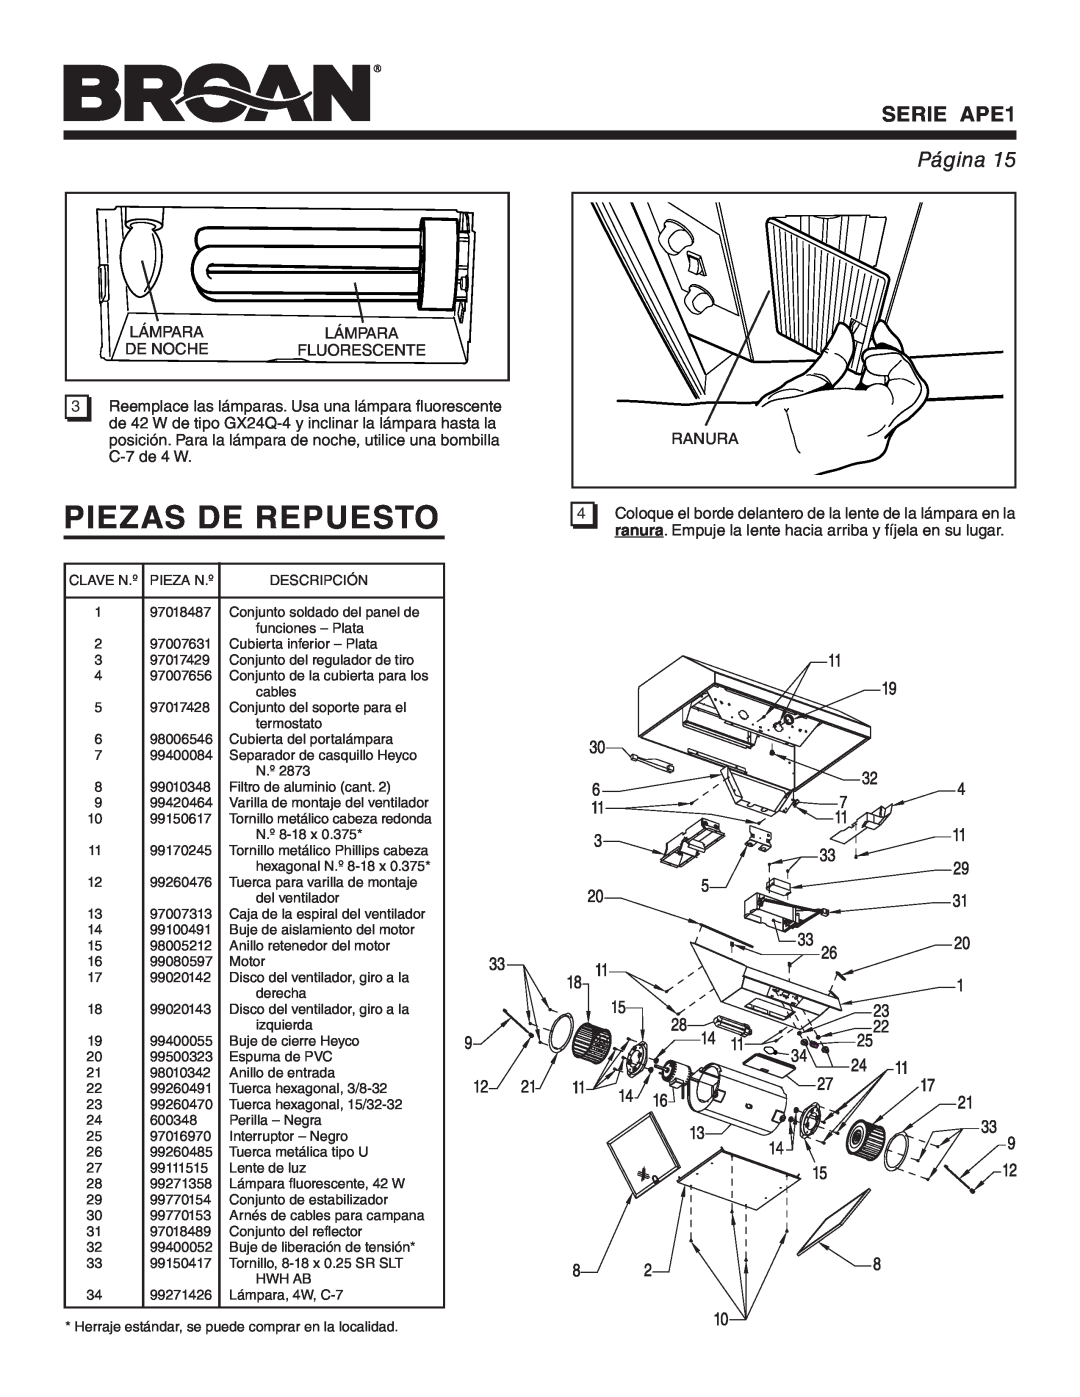 Broan warranty Piezas De Repuesto, SERIE APE1, Página, Disco del ventilador, giro a la 